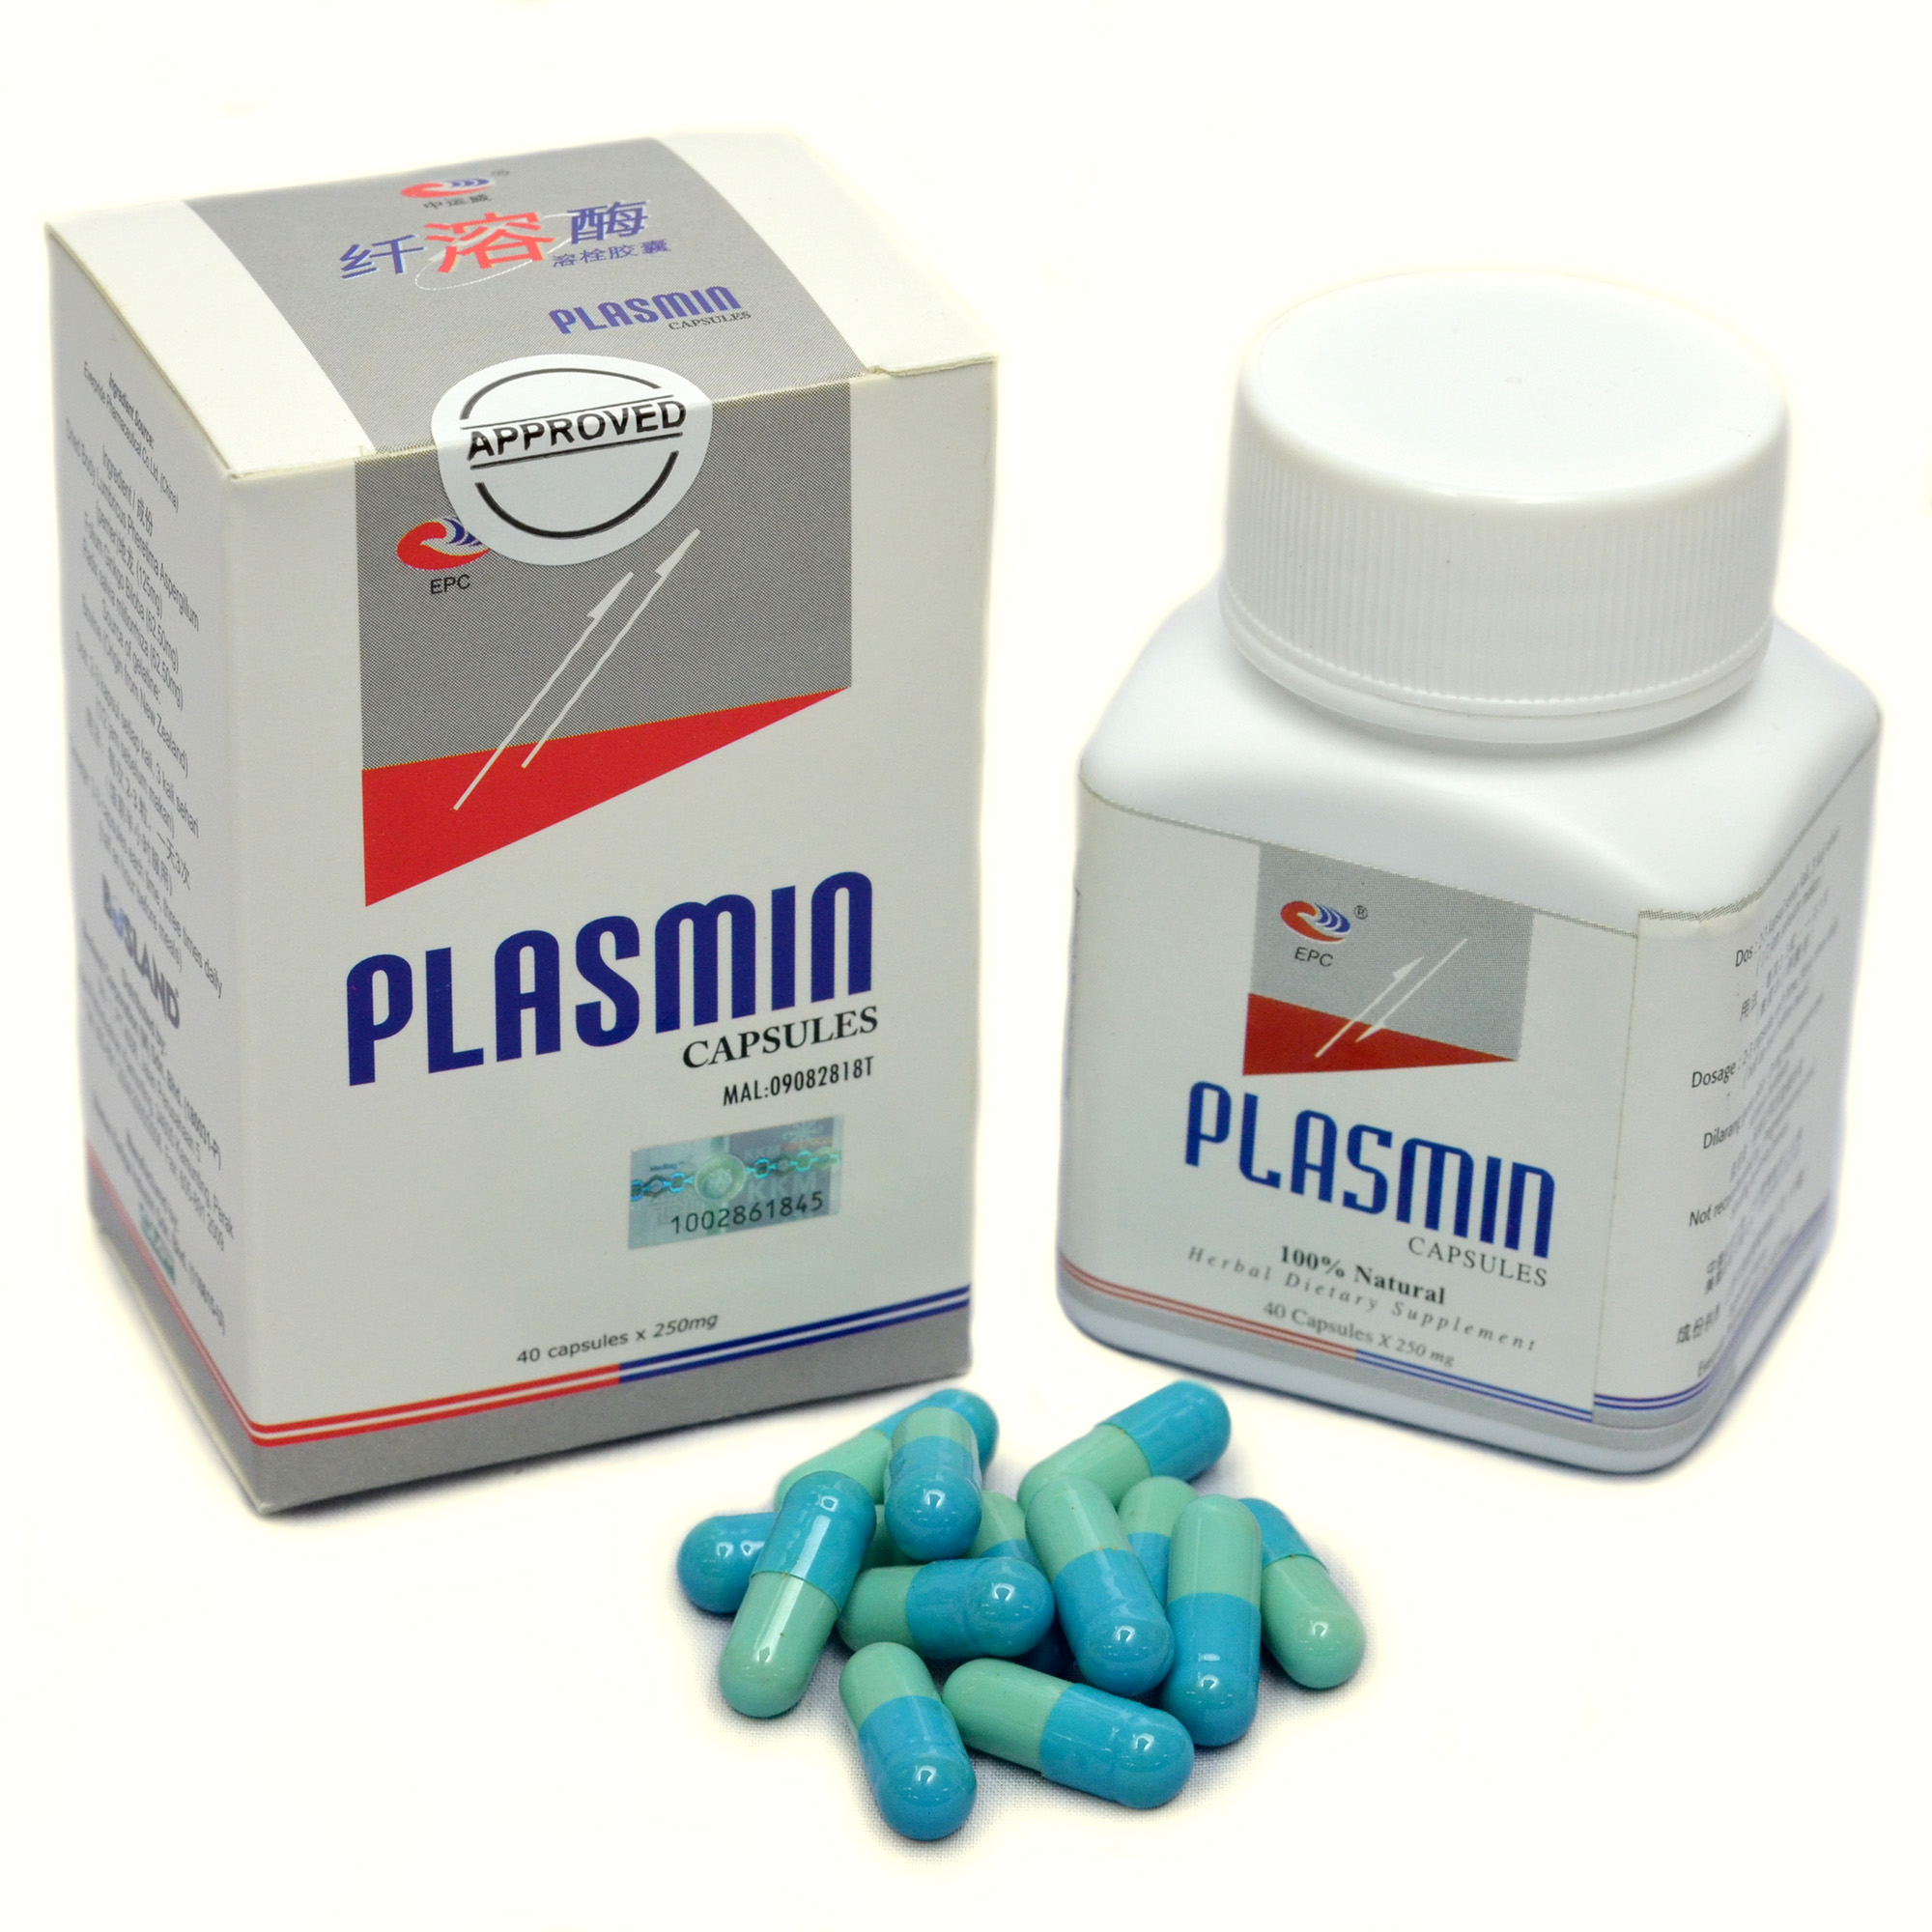 Plasmin Capsules